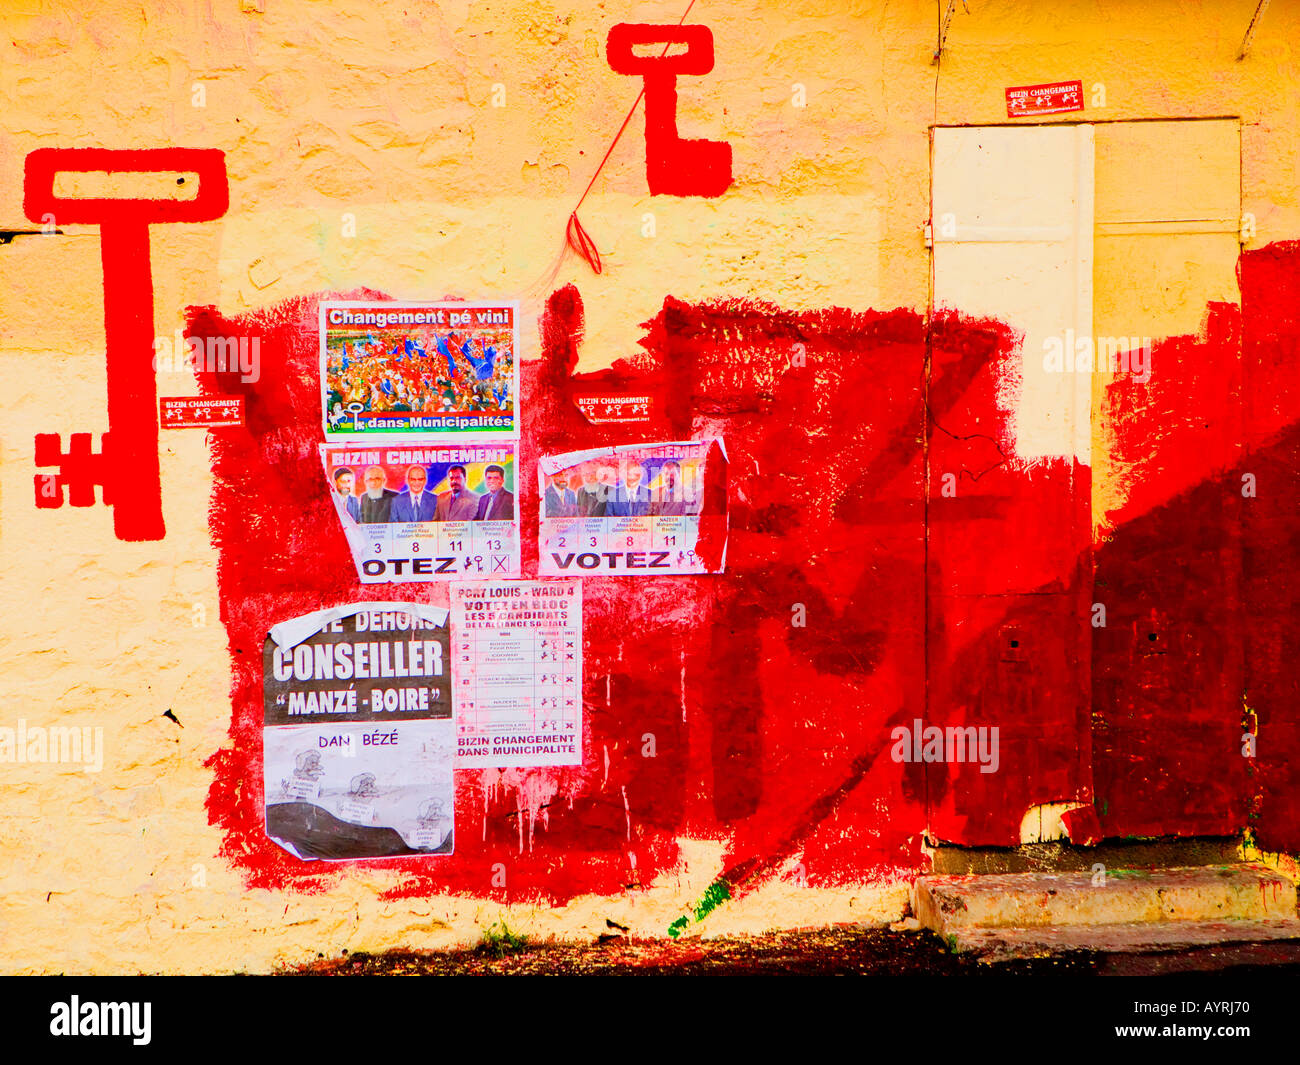 Mauritius Wahlen Sept.05 - politischen HQ mit grellen rot gestrichenen Wänden Stockfoto